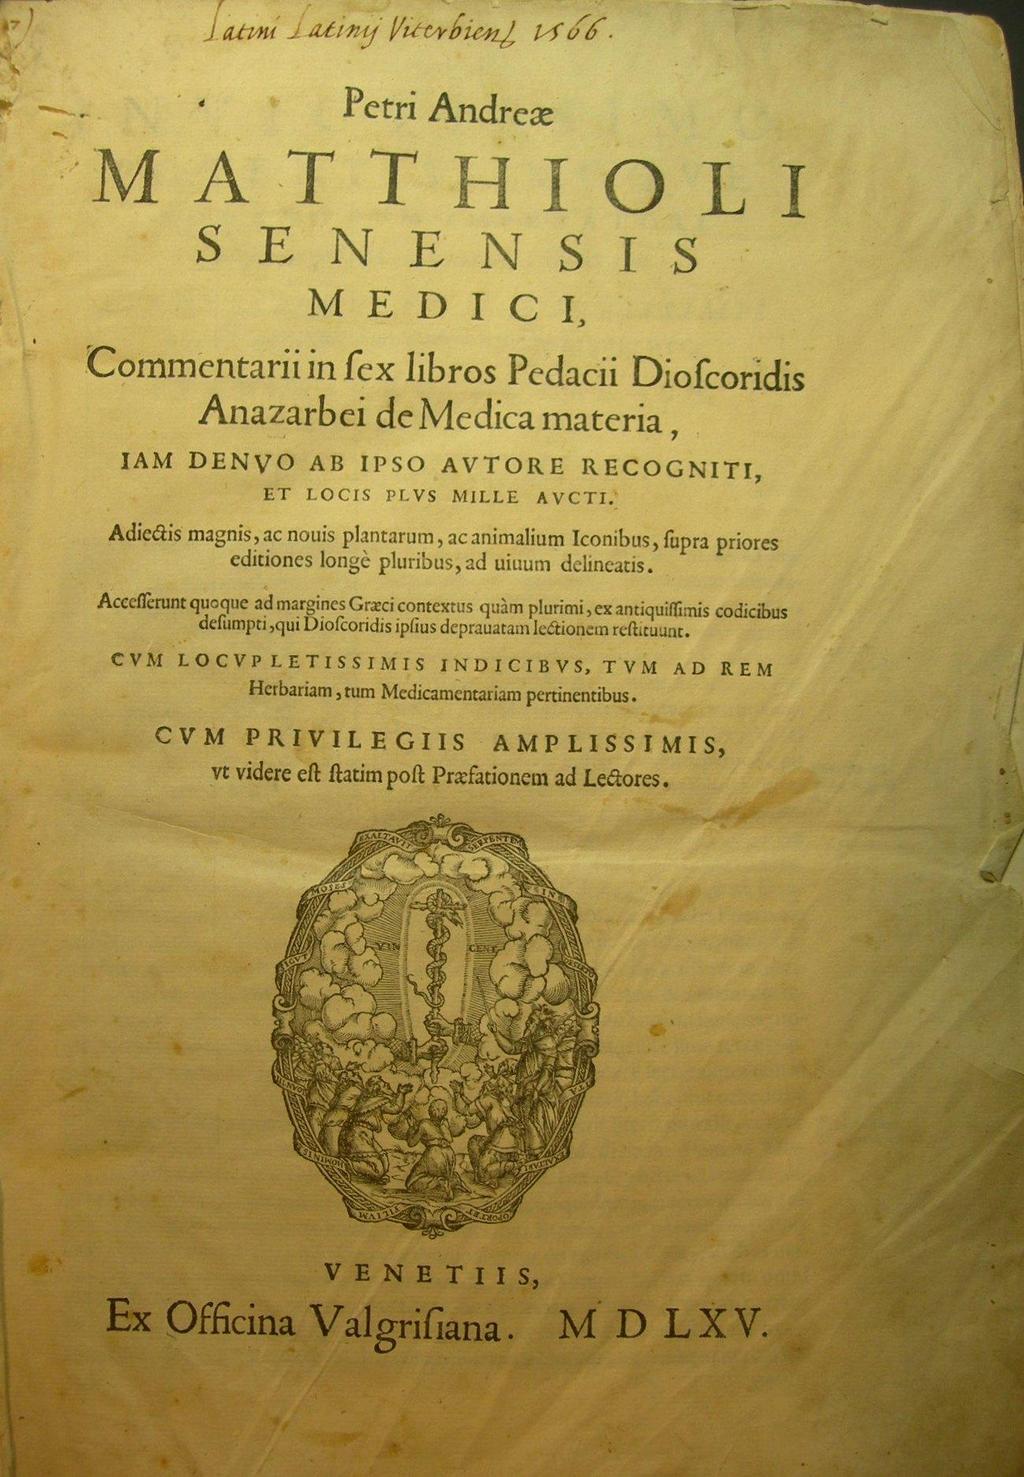 Mattioli Nel 1544, il medicobotanico senese PIER ANDREA MATTIOLI (1500-1577) pubblica a Venezia il suo erbario figurato Commentari alla